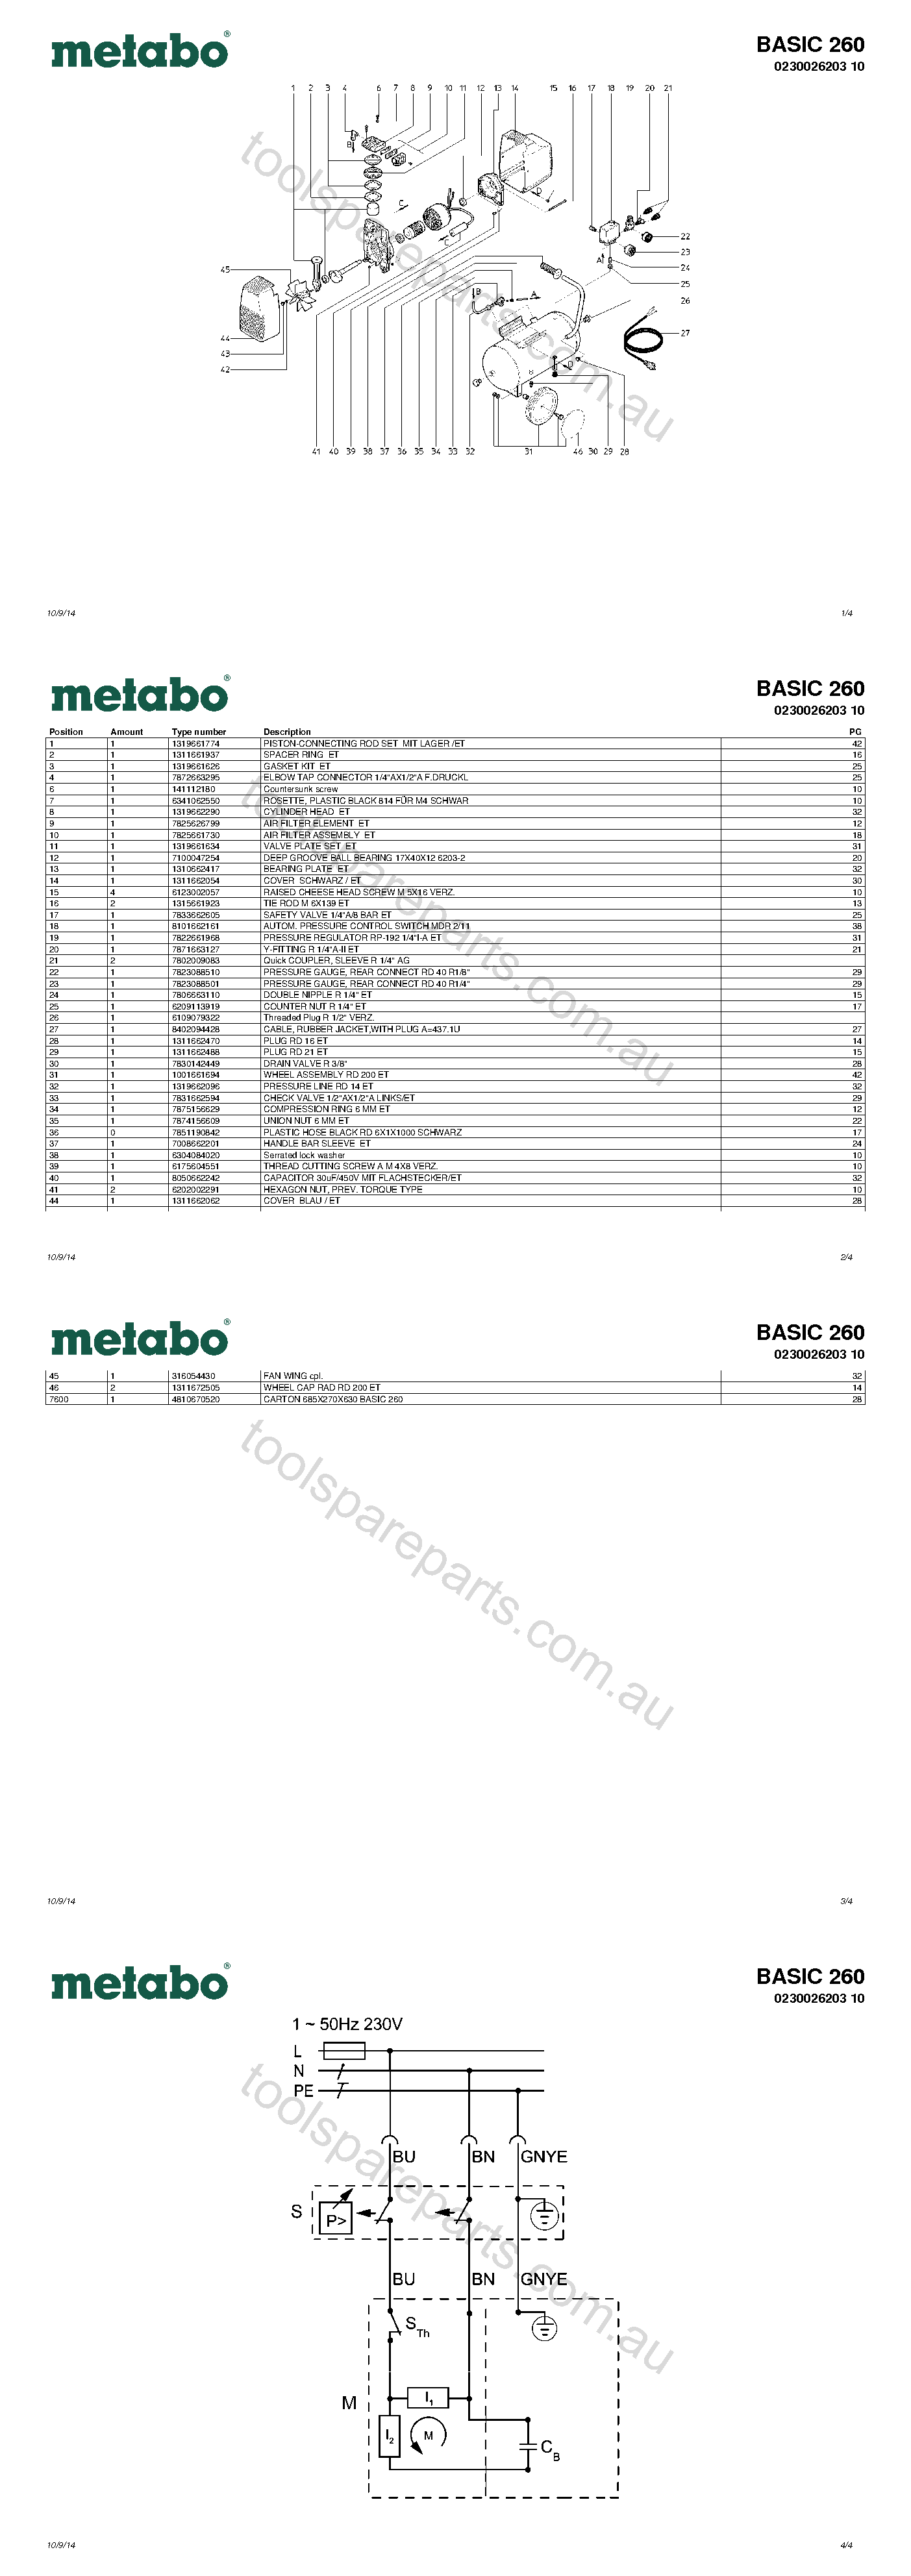 Metabo BASIC 260 0230026203 10  Diagram 1